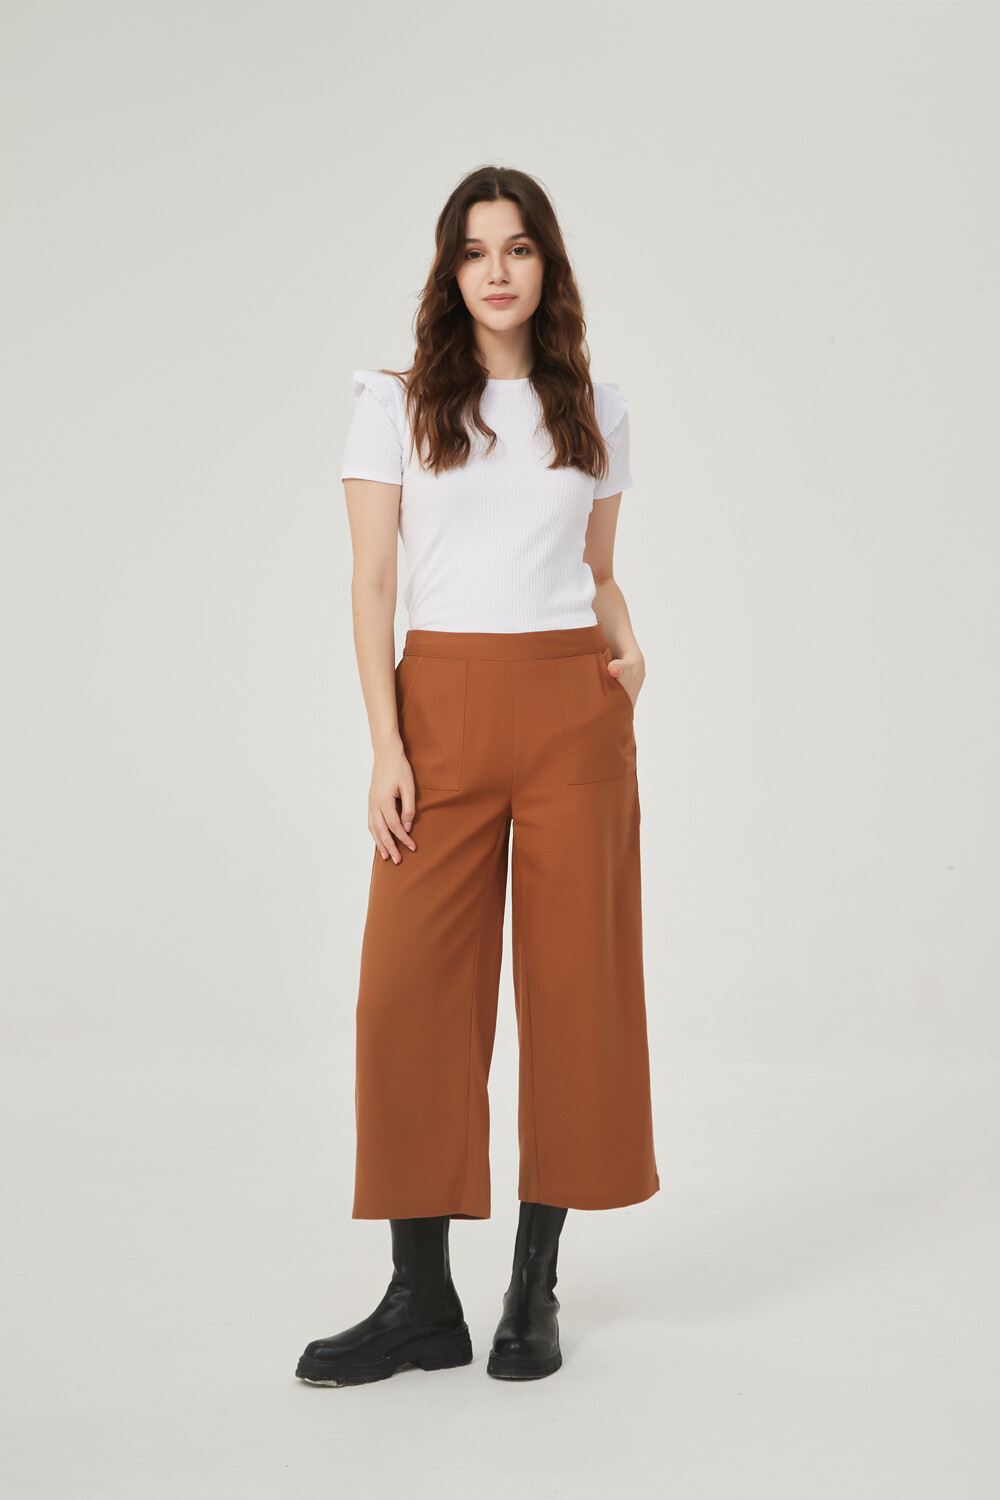 Pantalon Sanguin Marfil / Off White